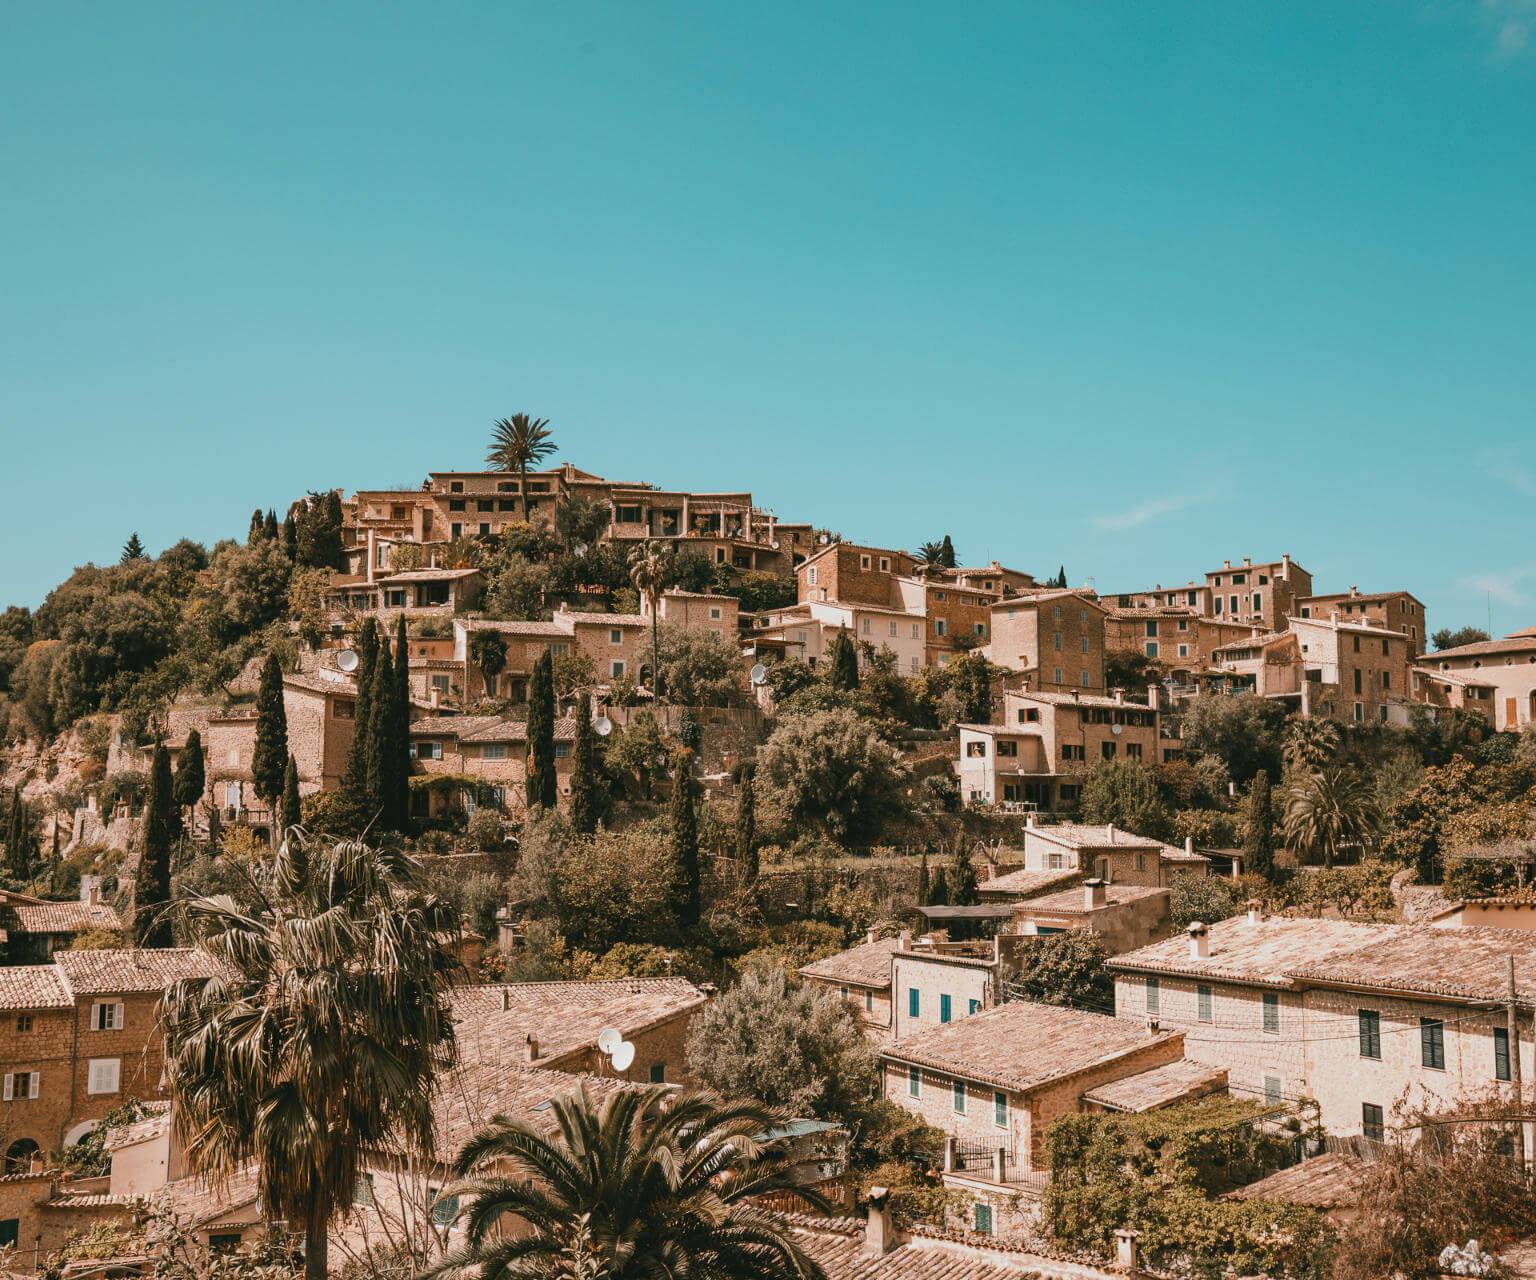 Blick auf die Häuser des ruhigen Örtchen Deiàs auf der Baleareninsel Mallorca.